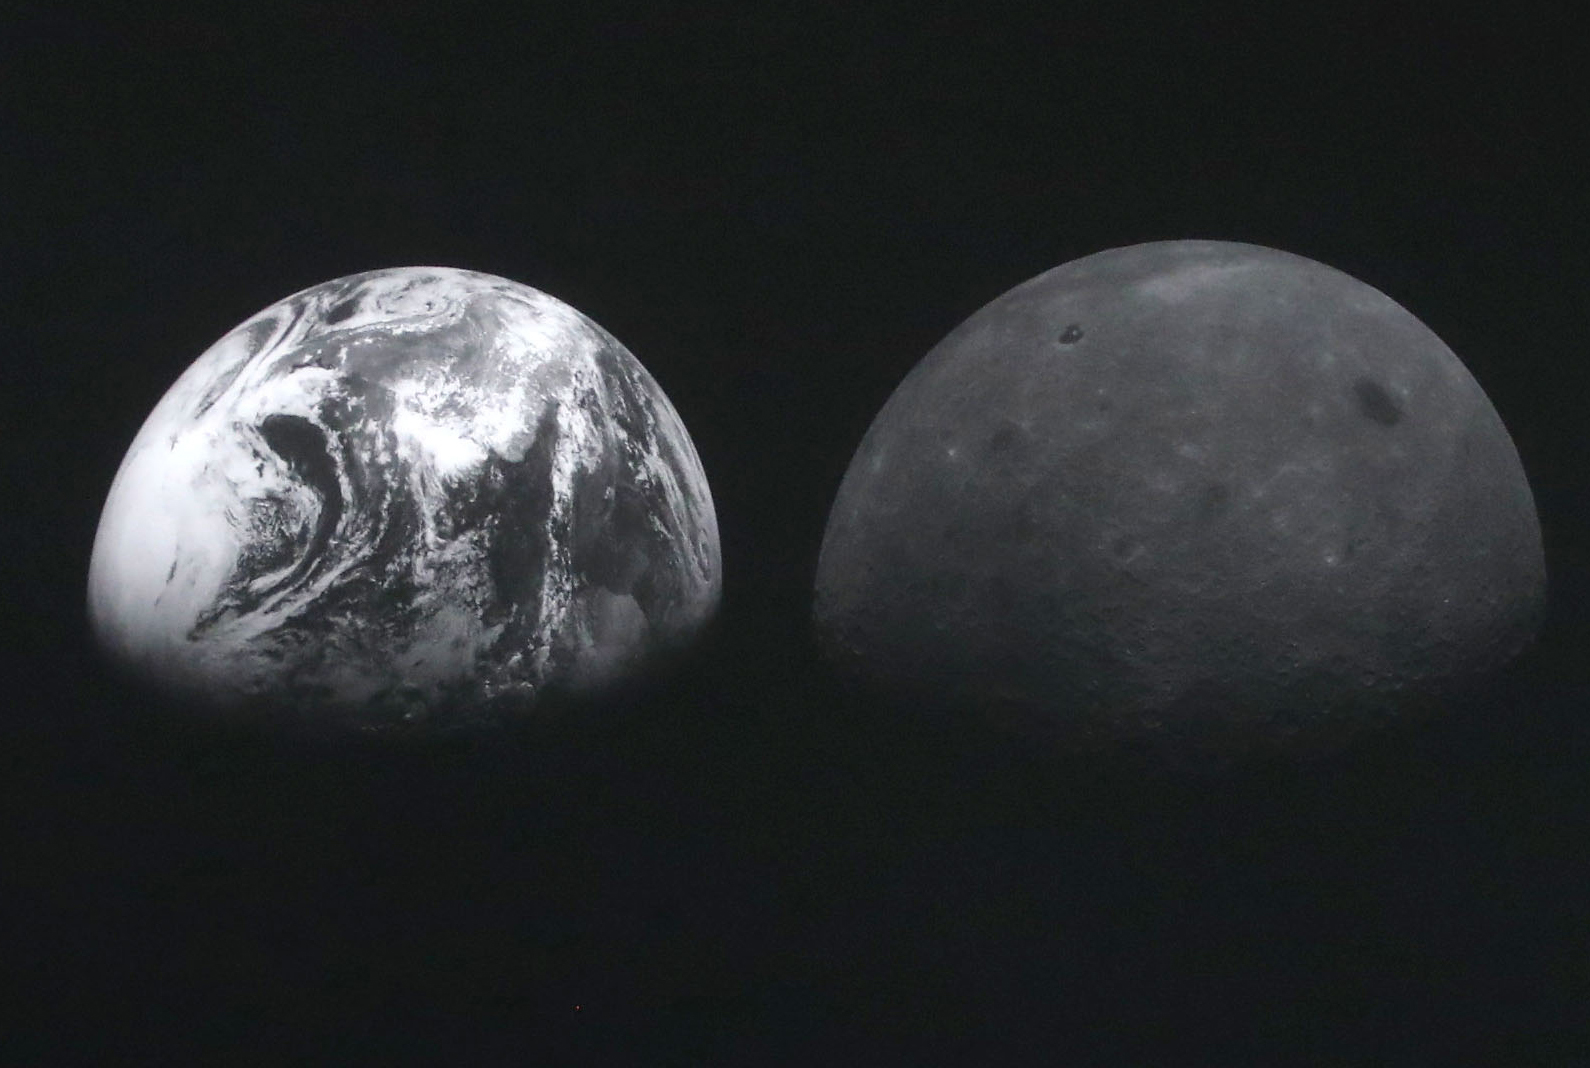 المركبة المدارية القمرية لكوريا الجنوبية تكشف عن صور مذهلة بالأبيض والأسود للأرض والقمر